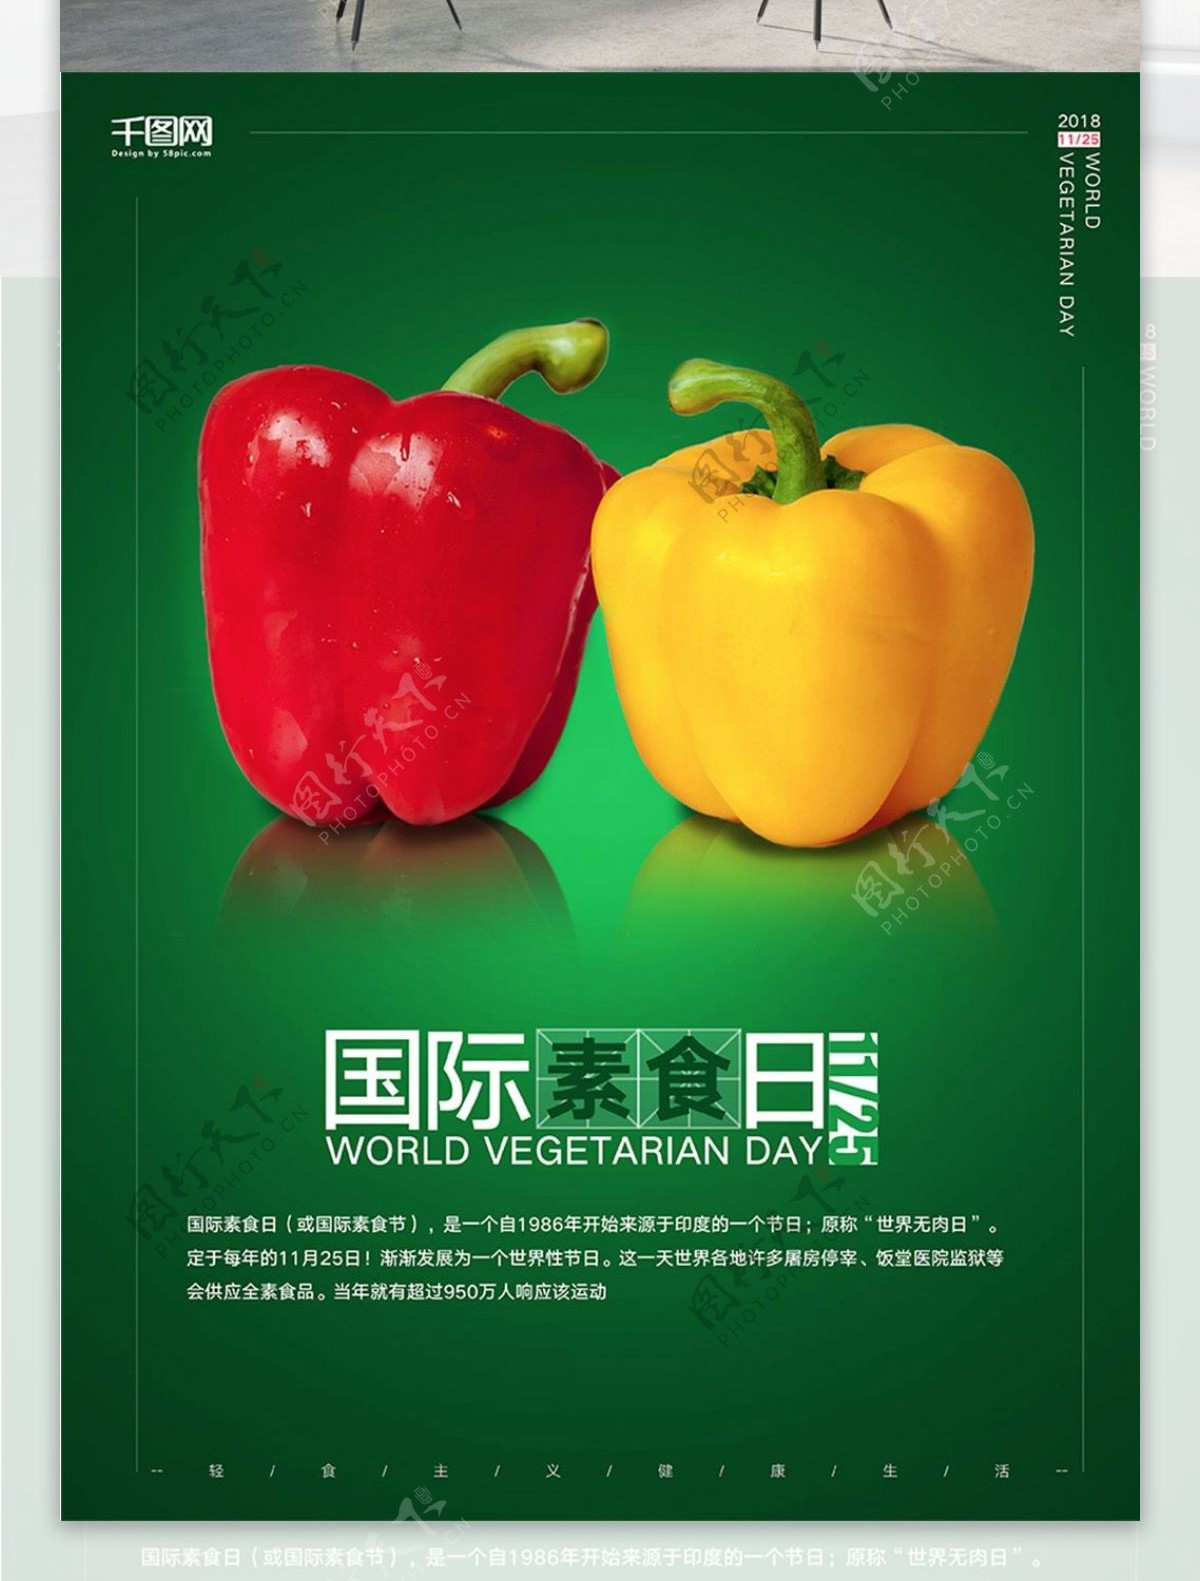 简约绿色国际素食日公益海报